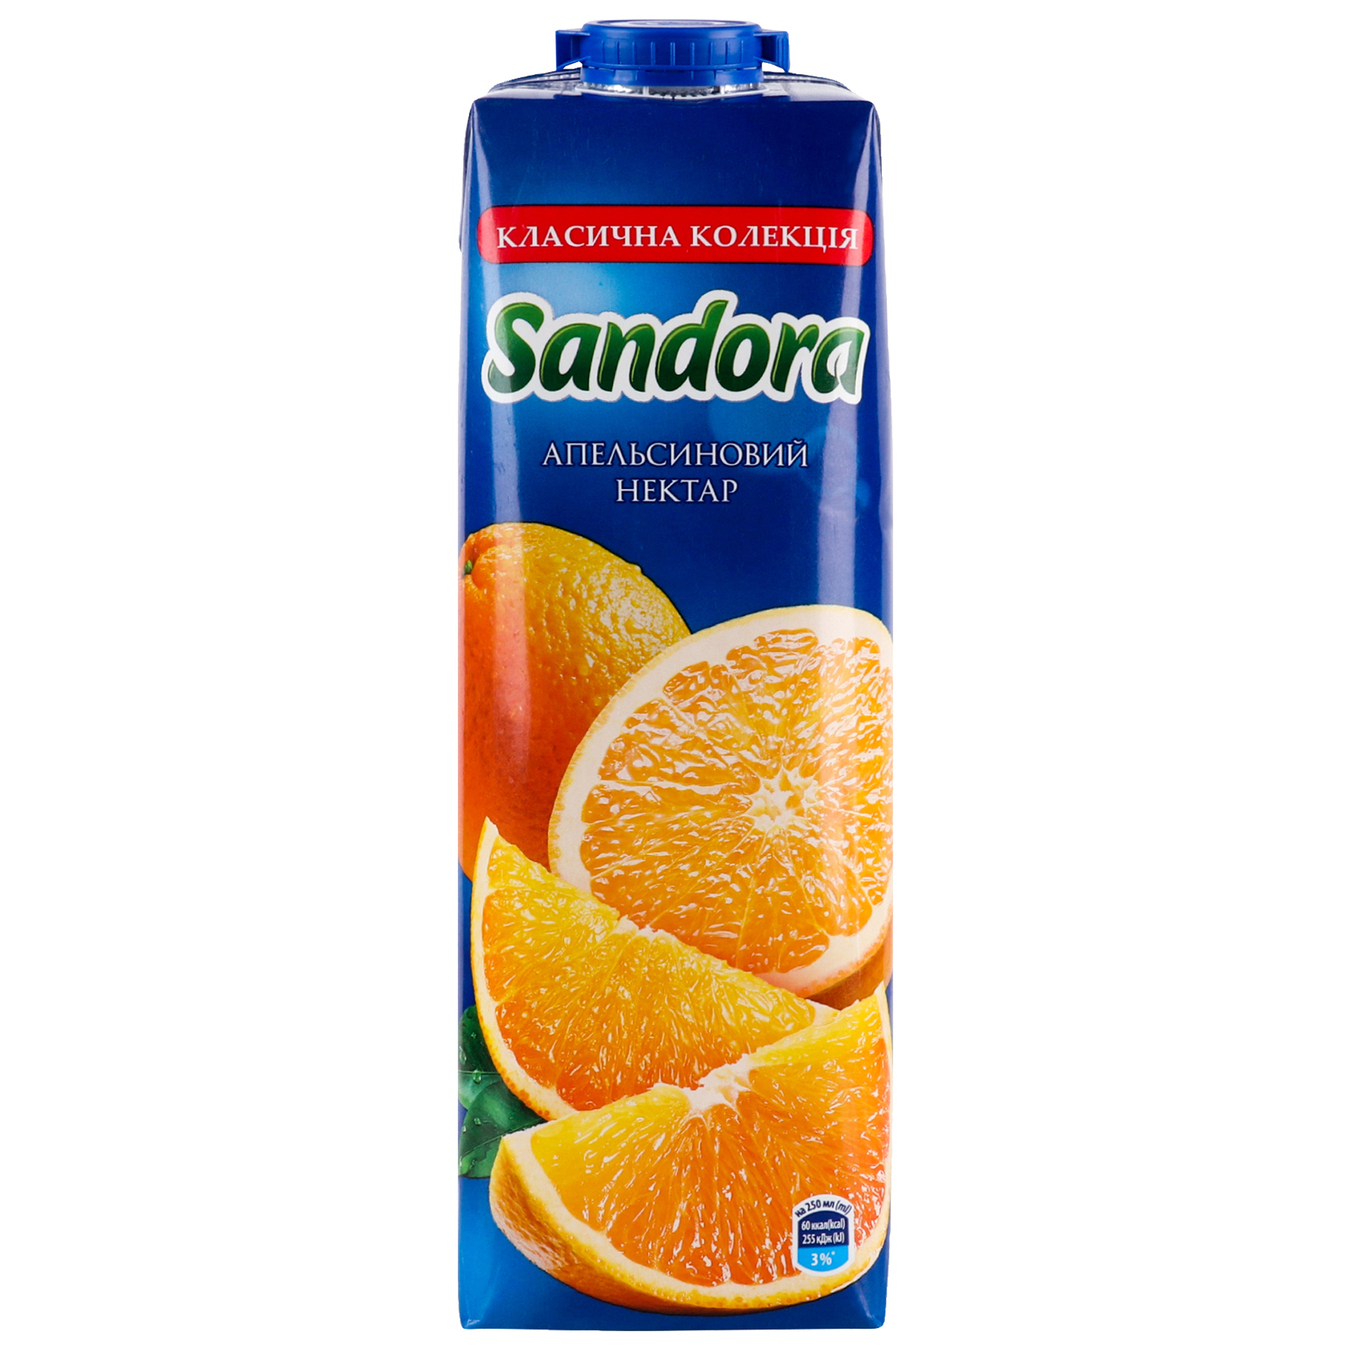 Sandora Orange nectar 1l   